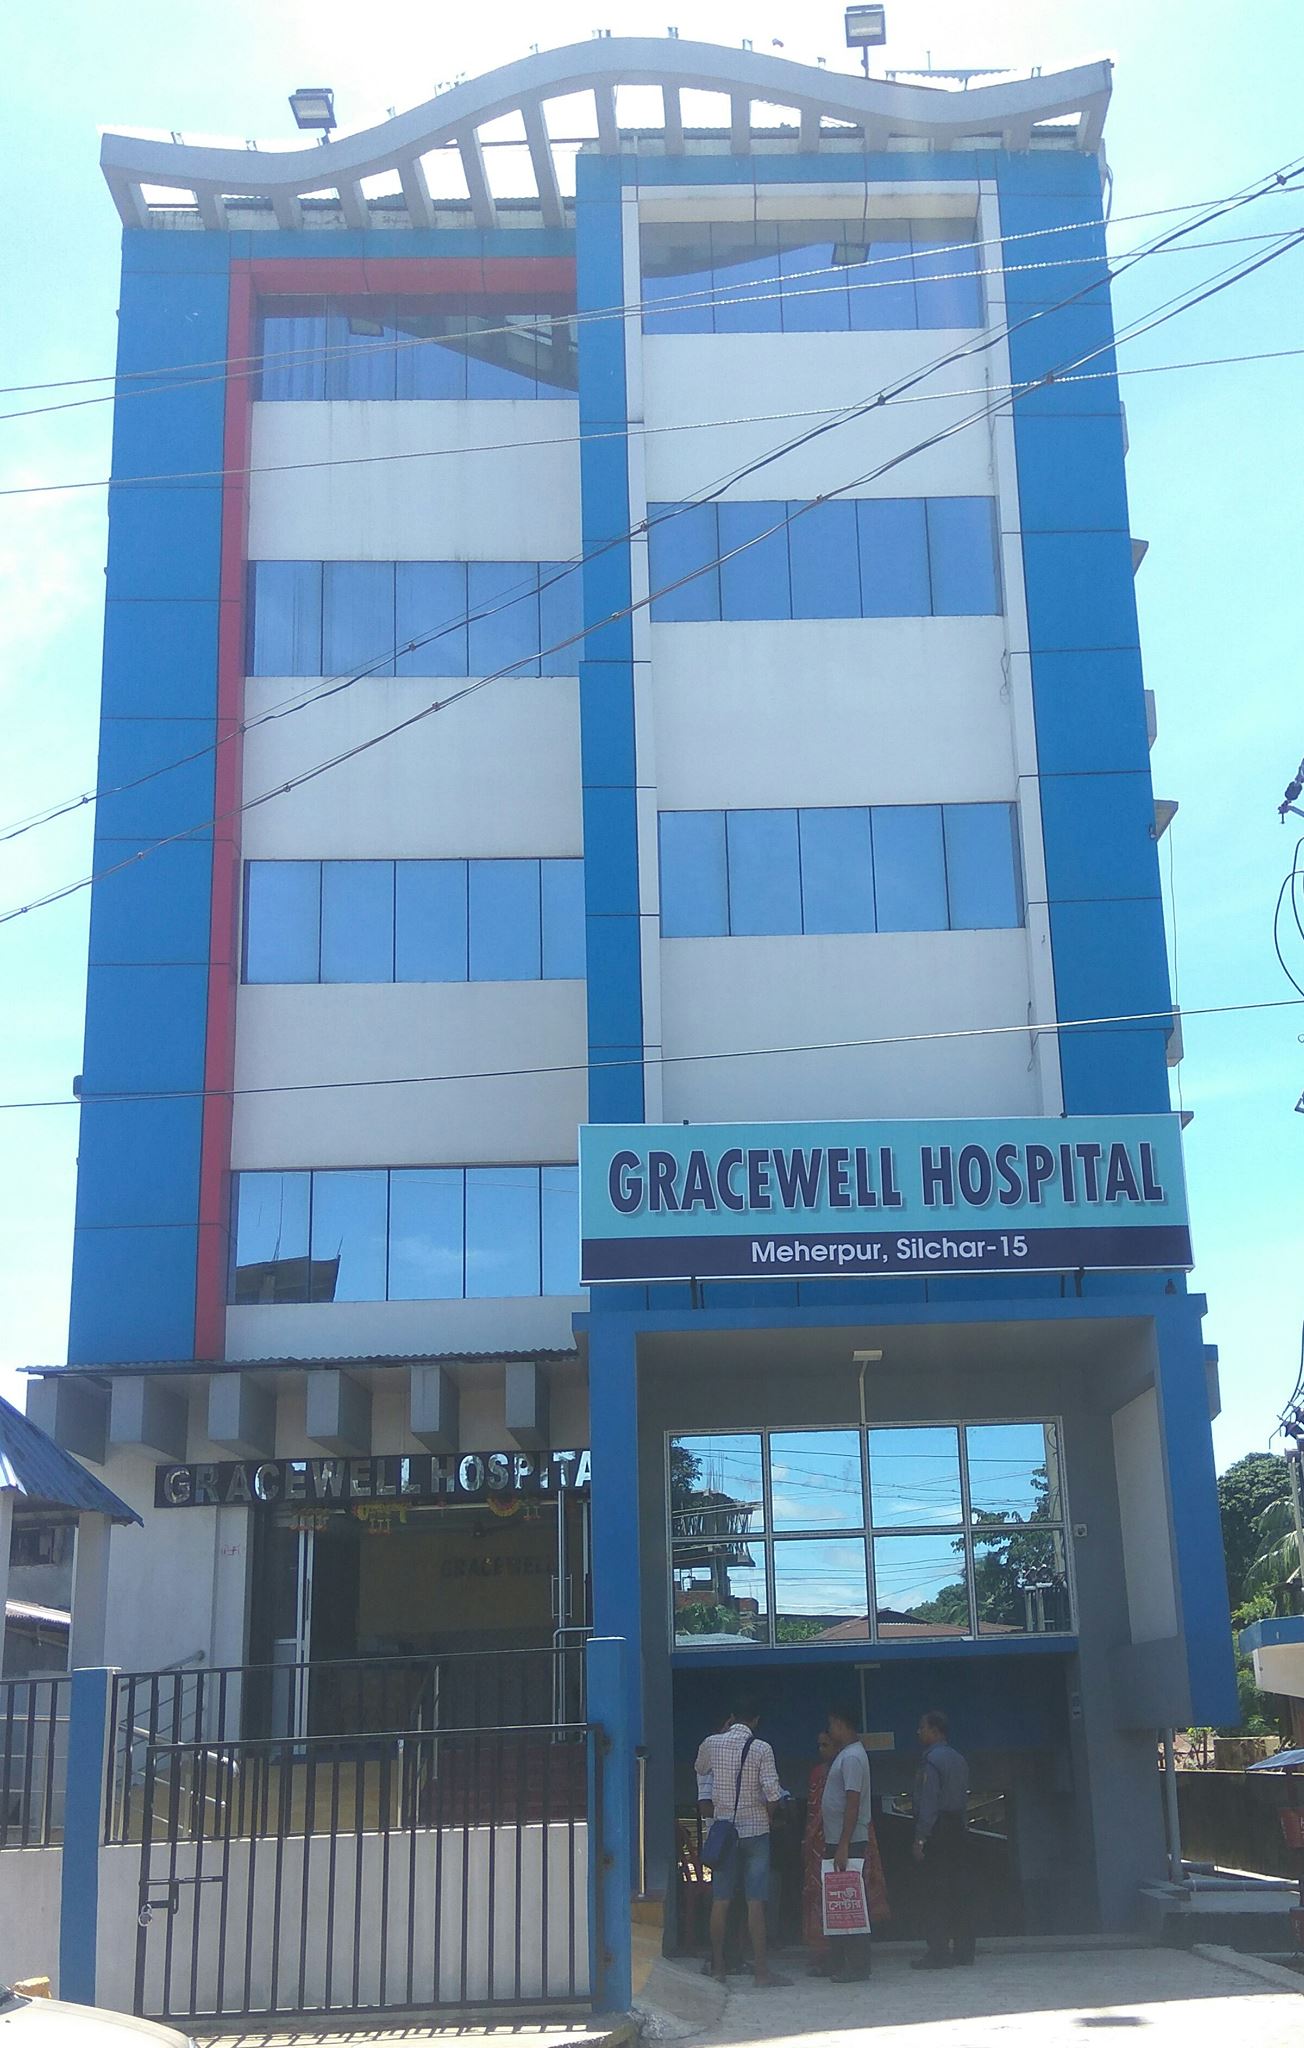 Gracewell Hospital